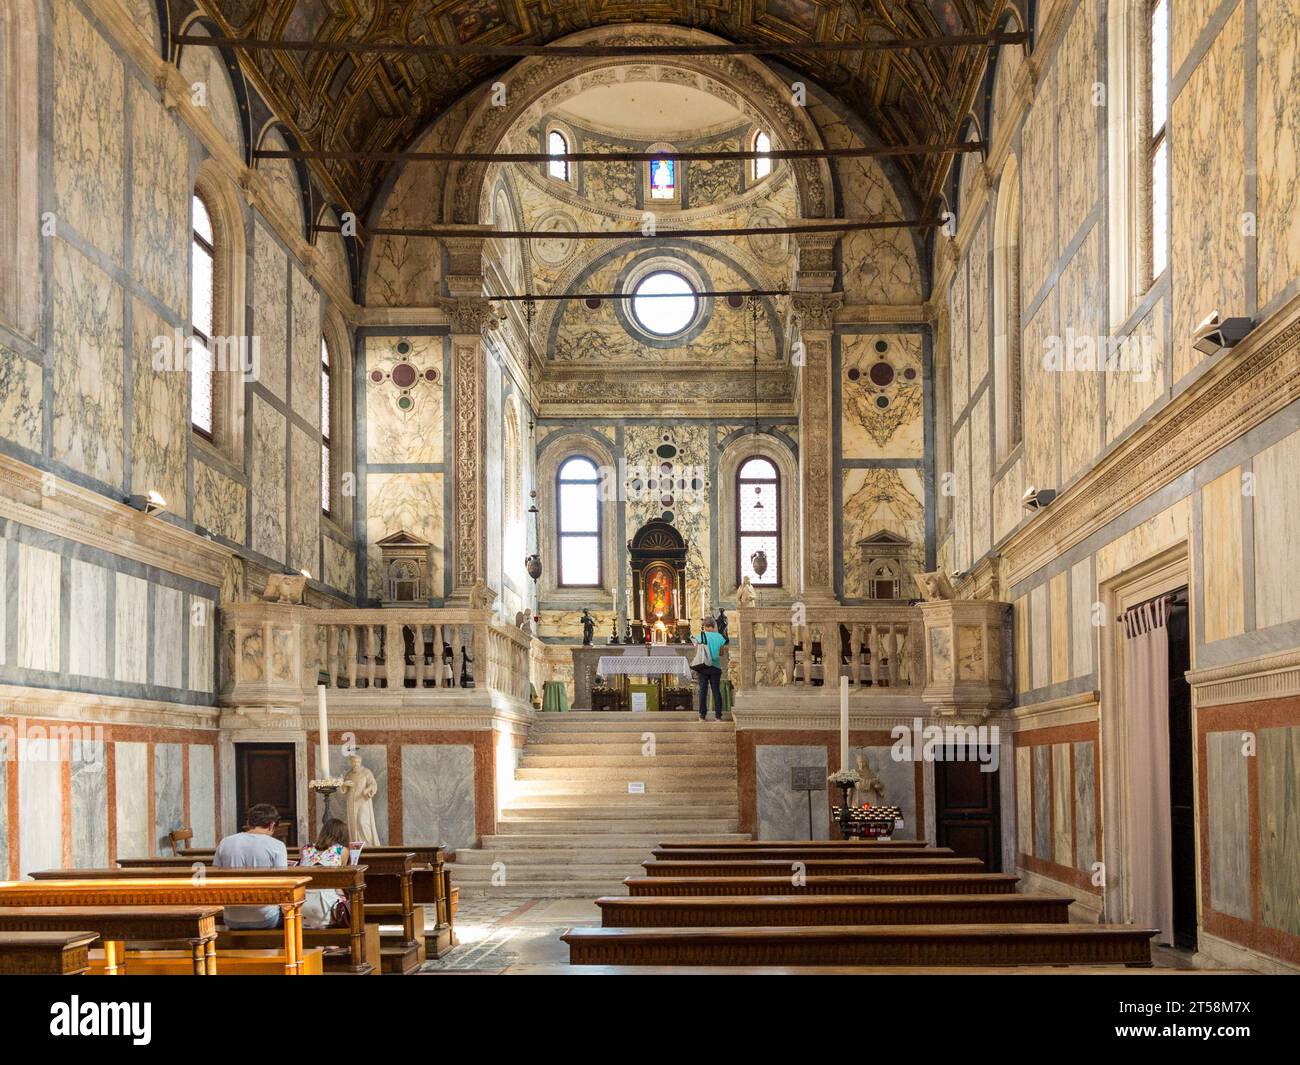 Intérieur d'une église vénitienne richement décorée de marbre. Deux touristes sont assis dans l'église tandis qu'un touriste contemple l'autel. Venise. Banque D'Images